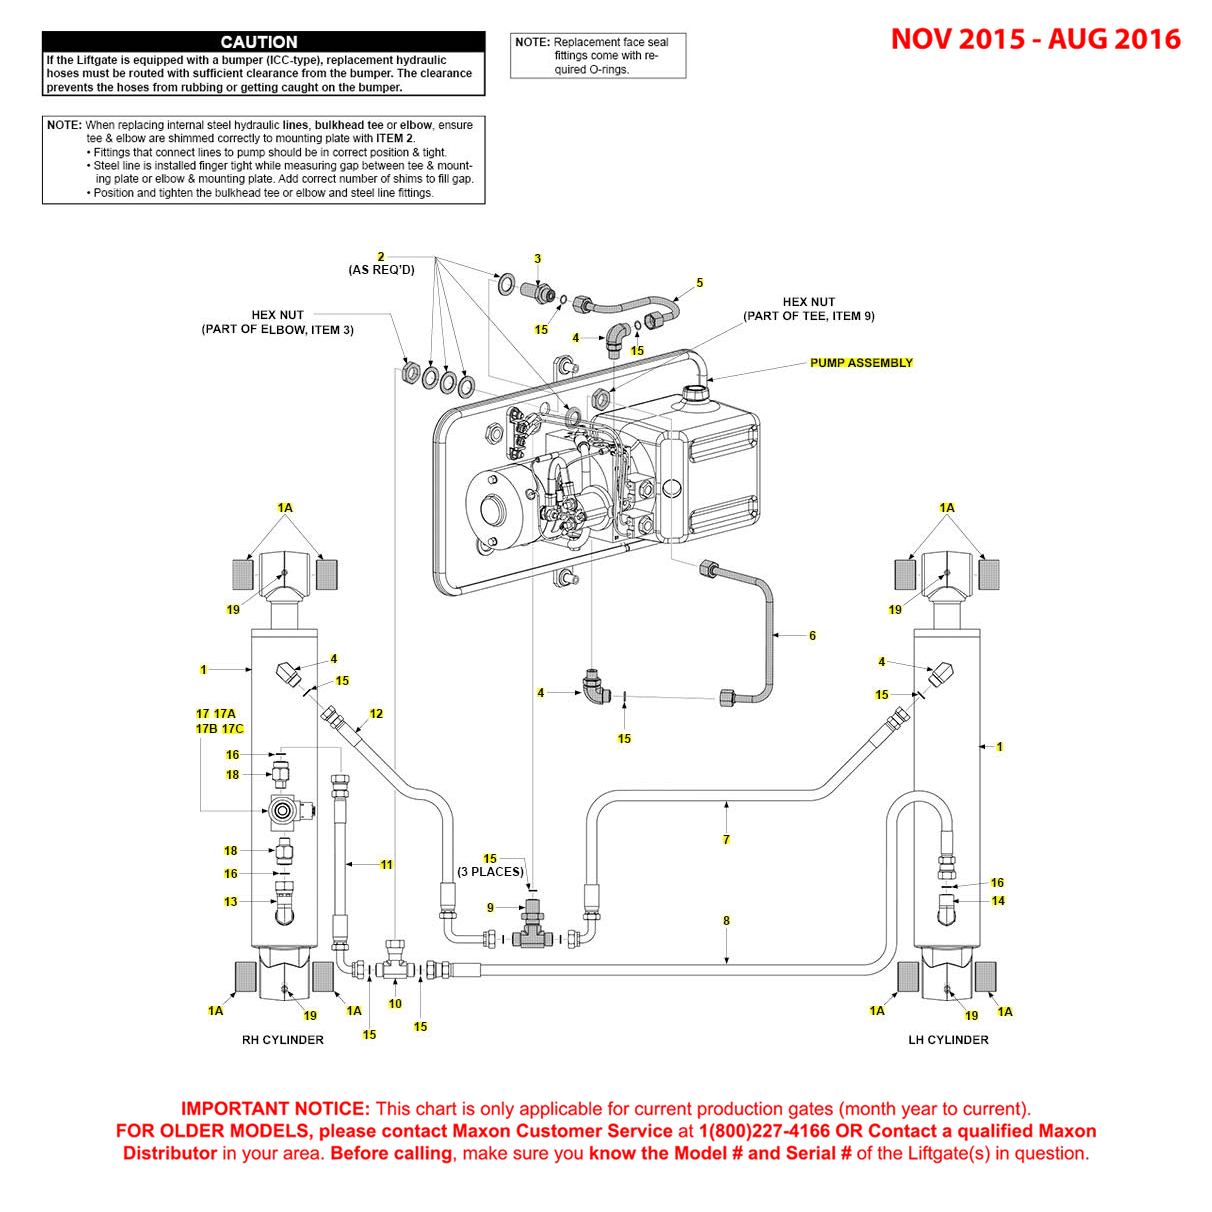 Maxon GPT (Nov 2015 - Aug 2016) Power Down Hydraulic Systems Diagram